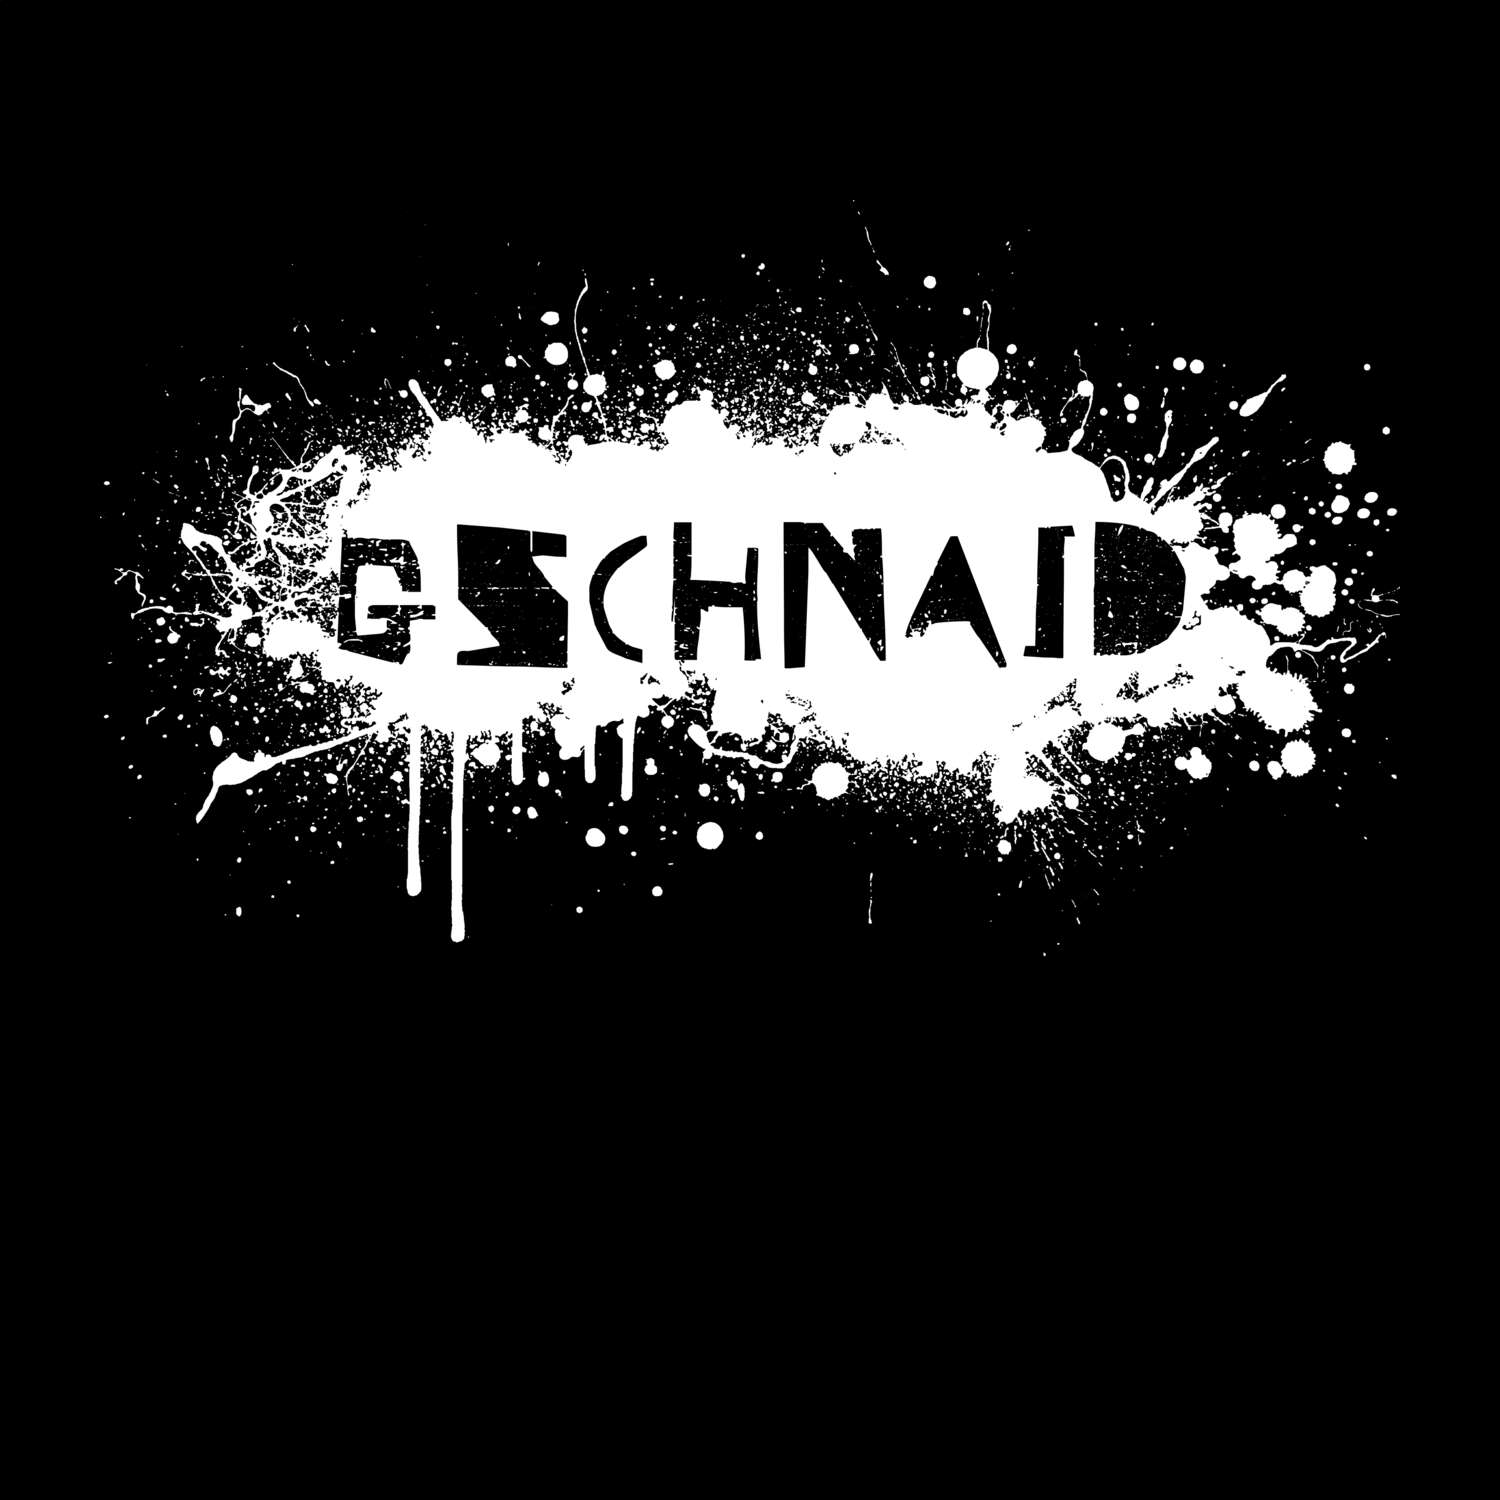 Gschnaid T-Shirt »Paint Splash Punk«